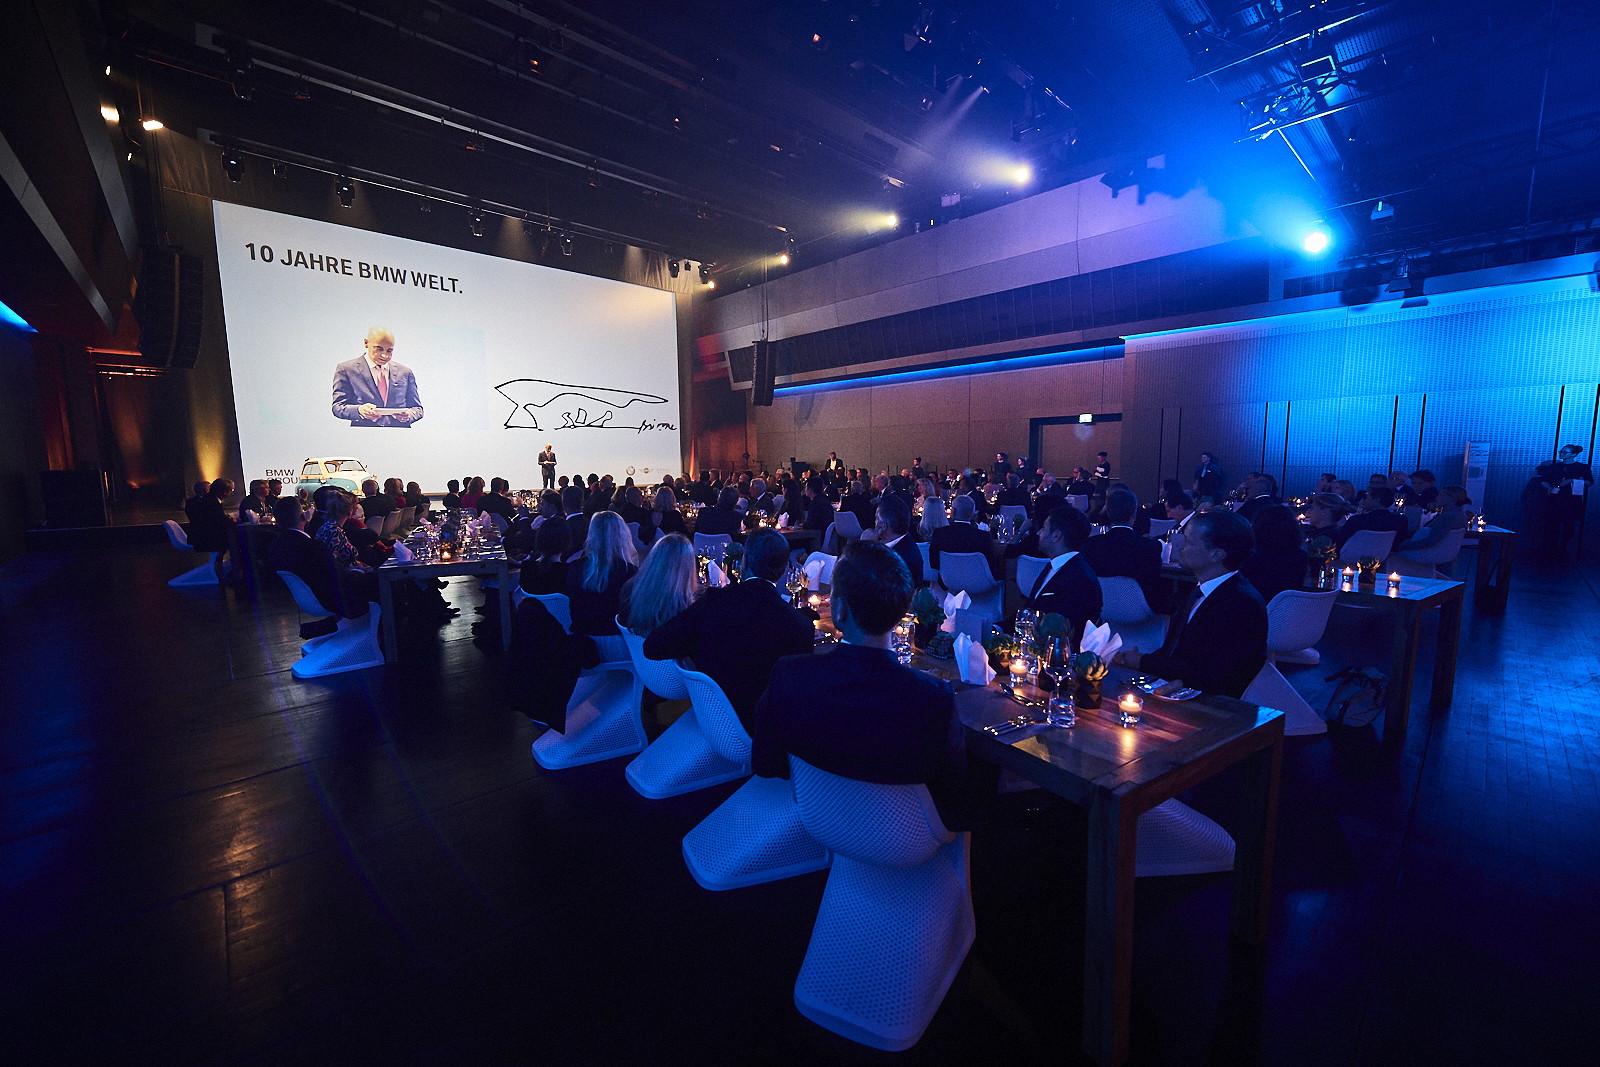 Feierliches Honoratioren-Dinner anlsslich des 10. Geburtstags der BMW Welt am 19.10.2017 im Auditorium der BMW Welt in Mnchen.